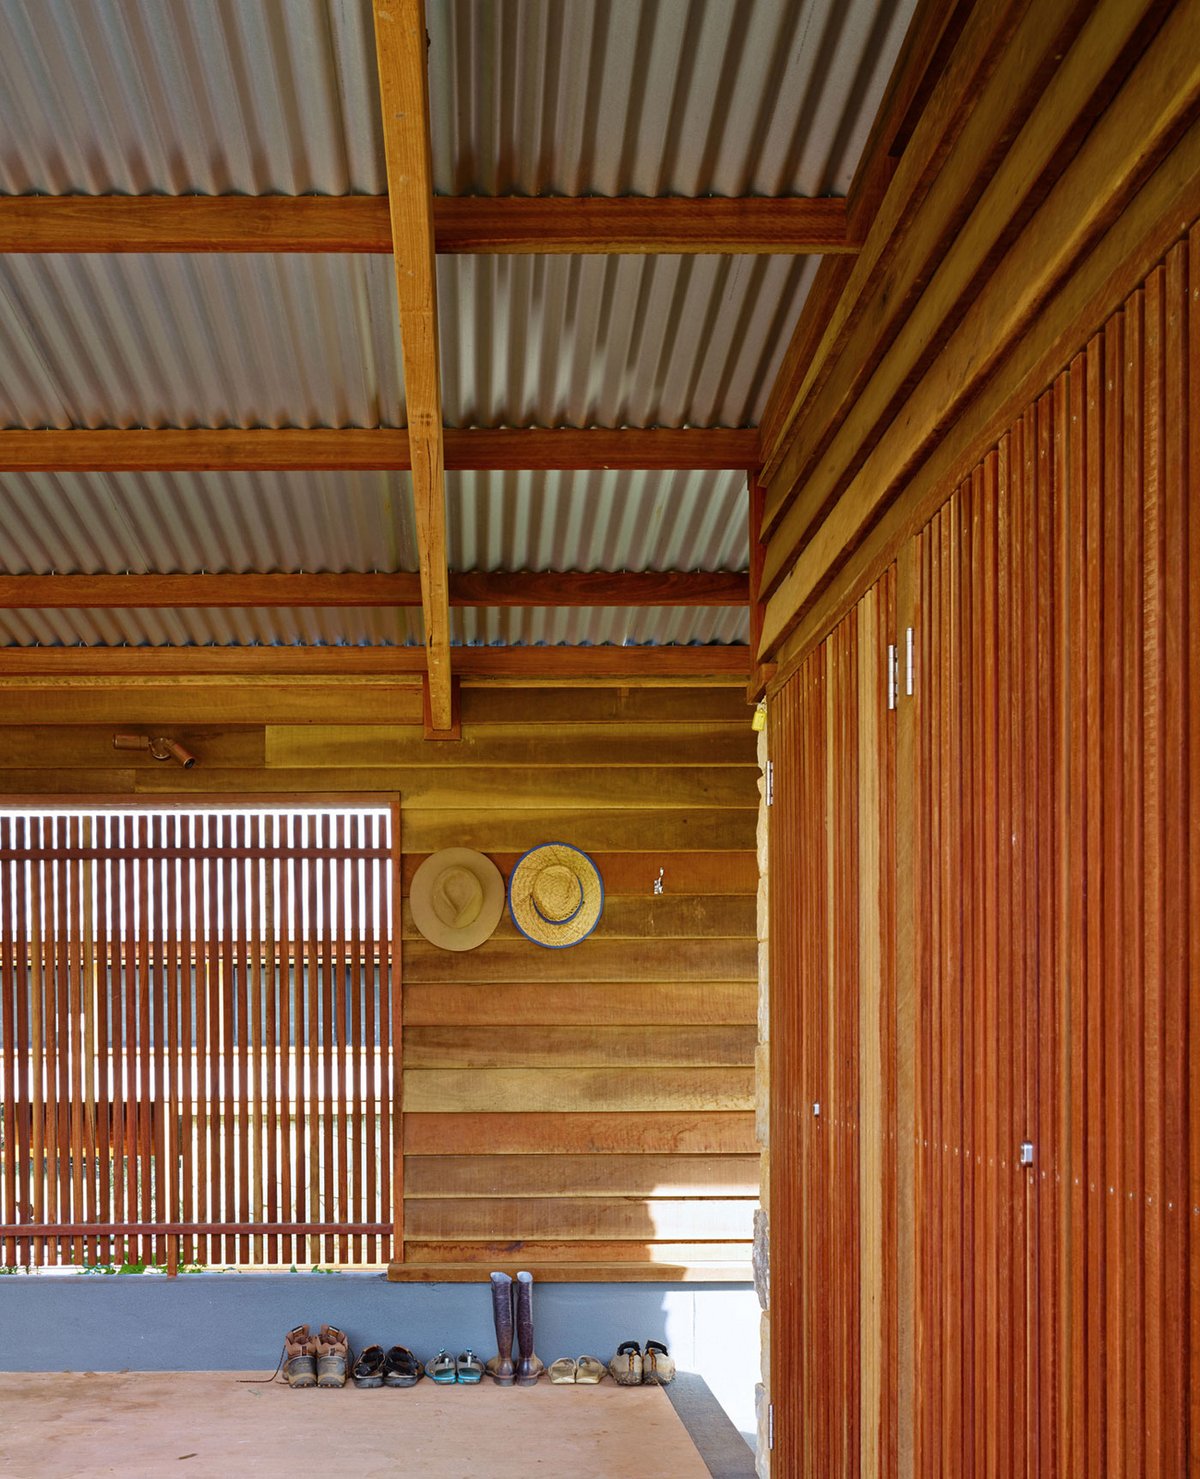 Hinterland House, Shaun Lockyer Architects, загородная резиденция, деревянный дом проекты, открытая планировка деревянного дома, дома в Австралии фото